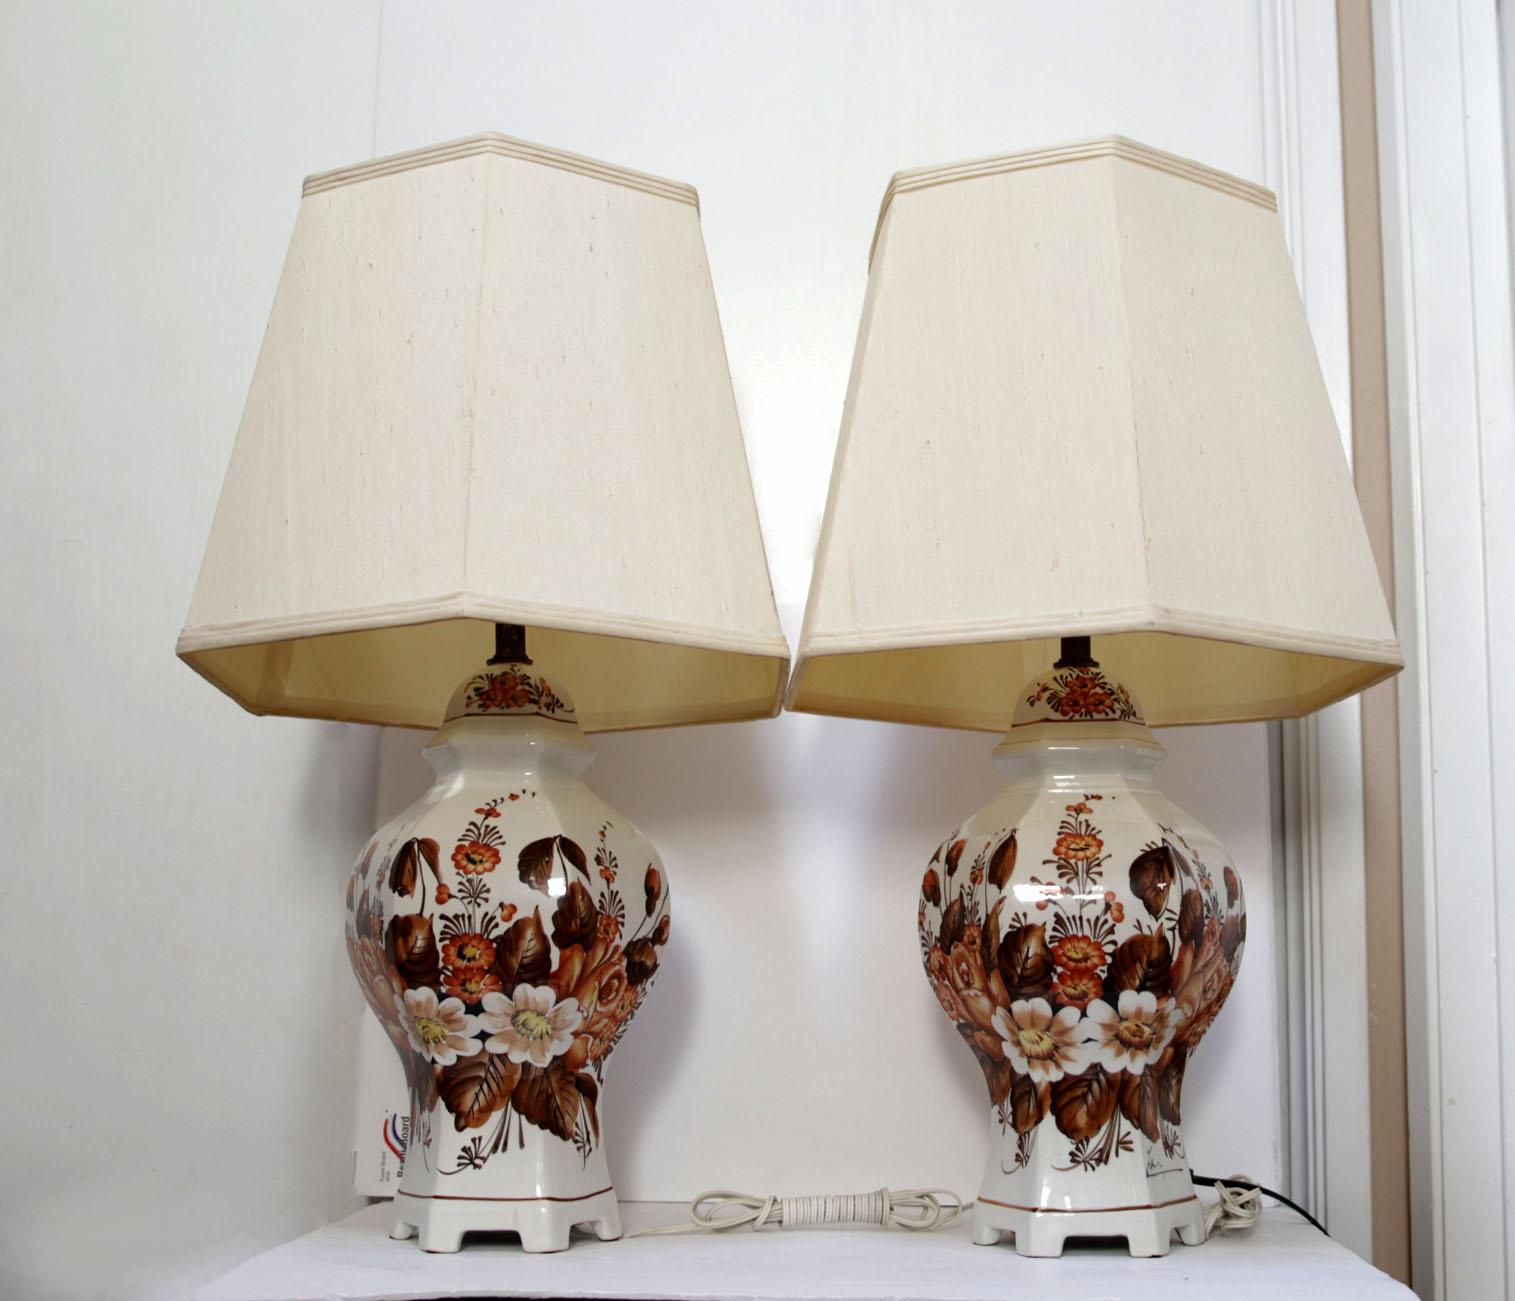 Ces lampes proviennent du centre de céramique d'Italie du Nord, Ancora. une paire de lampes de table hexagonales vintage en porcelaine italienne peinte à la main
décoré et signé par l'artiste, Antonio Zen, fabriqué à Ancora, Italie, 1940-1960. Les